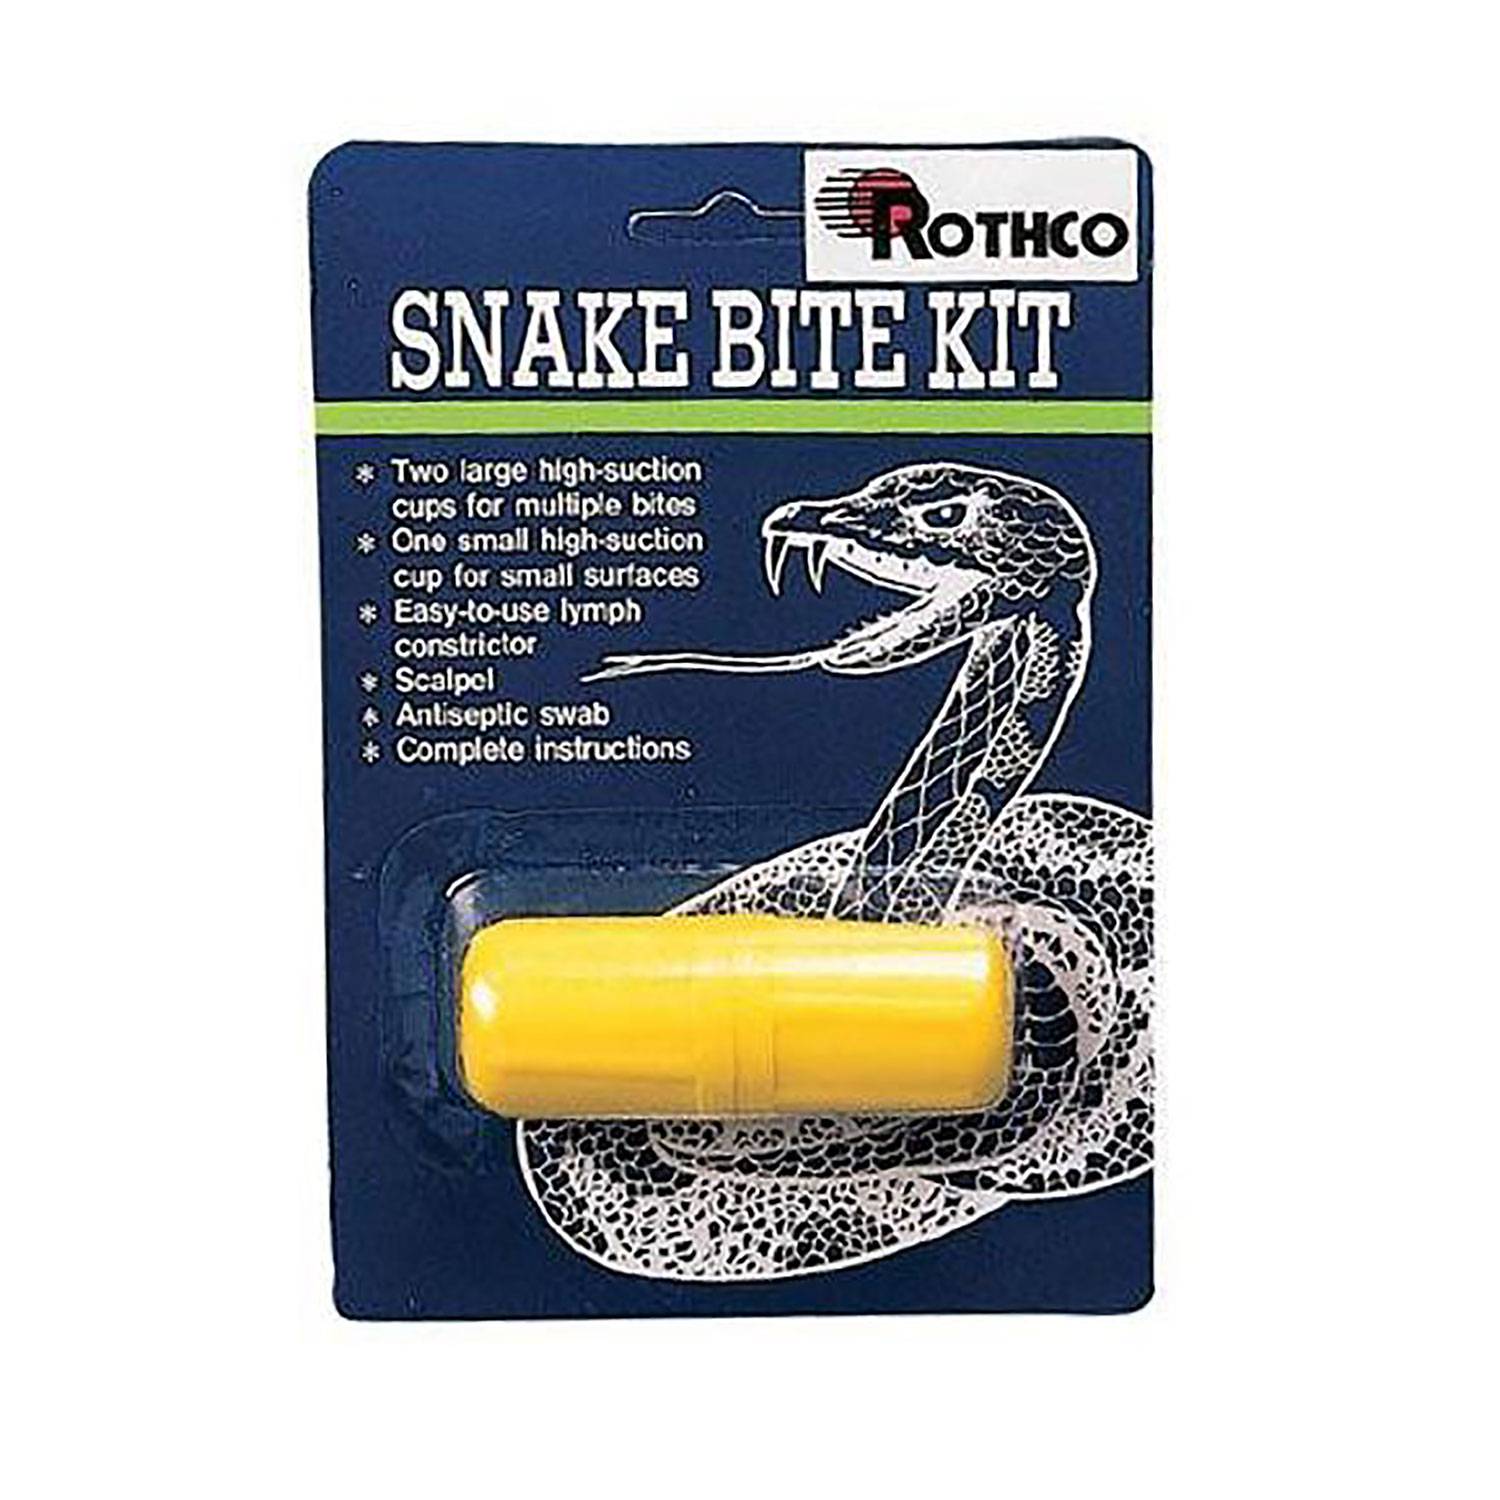 Rothco Snake Bite Kit